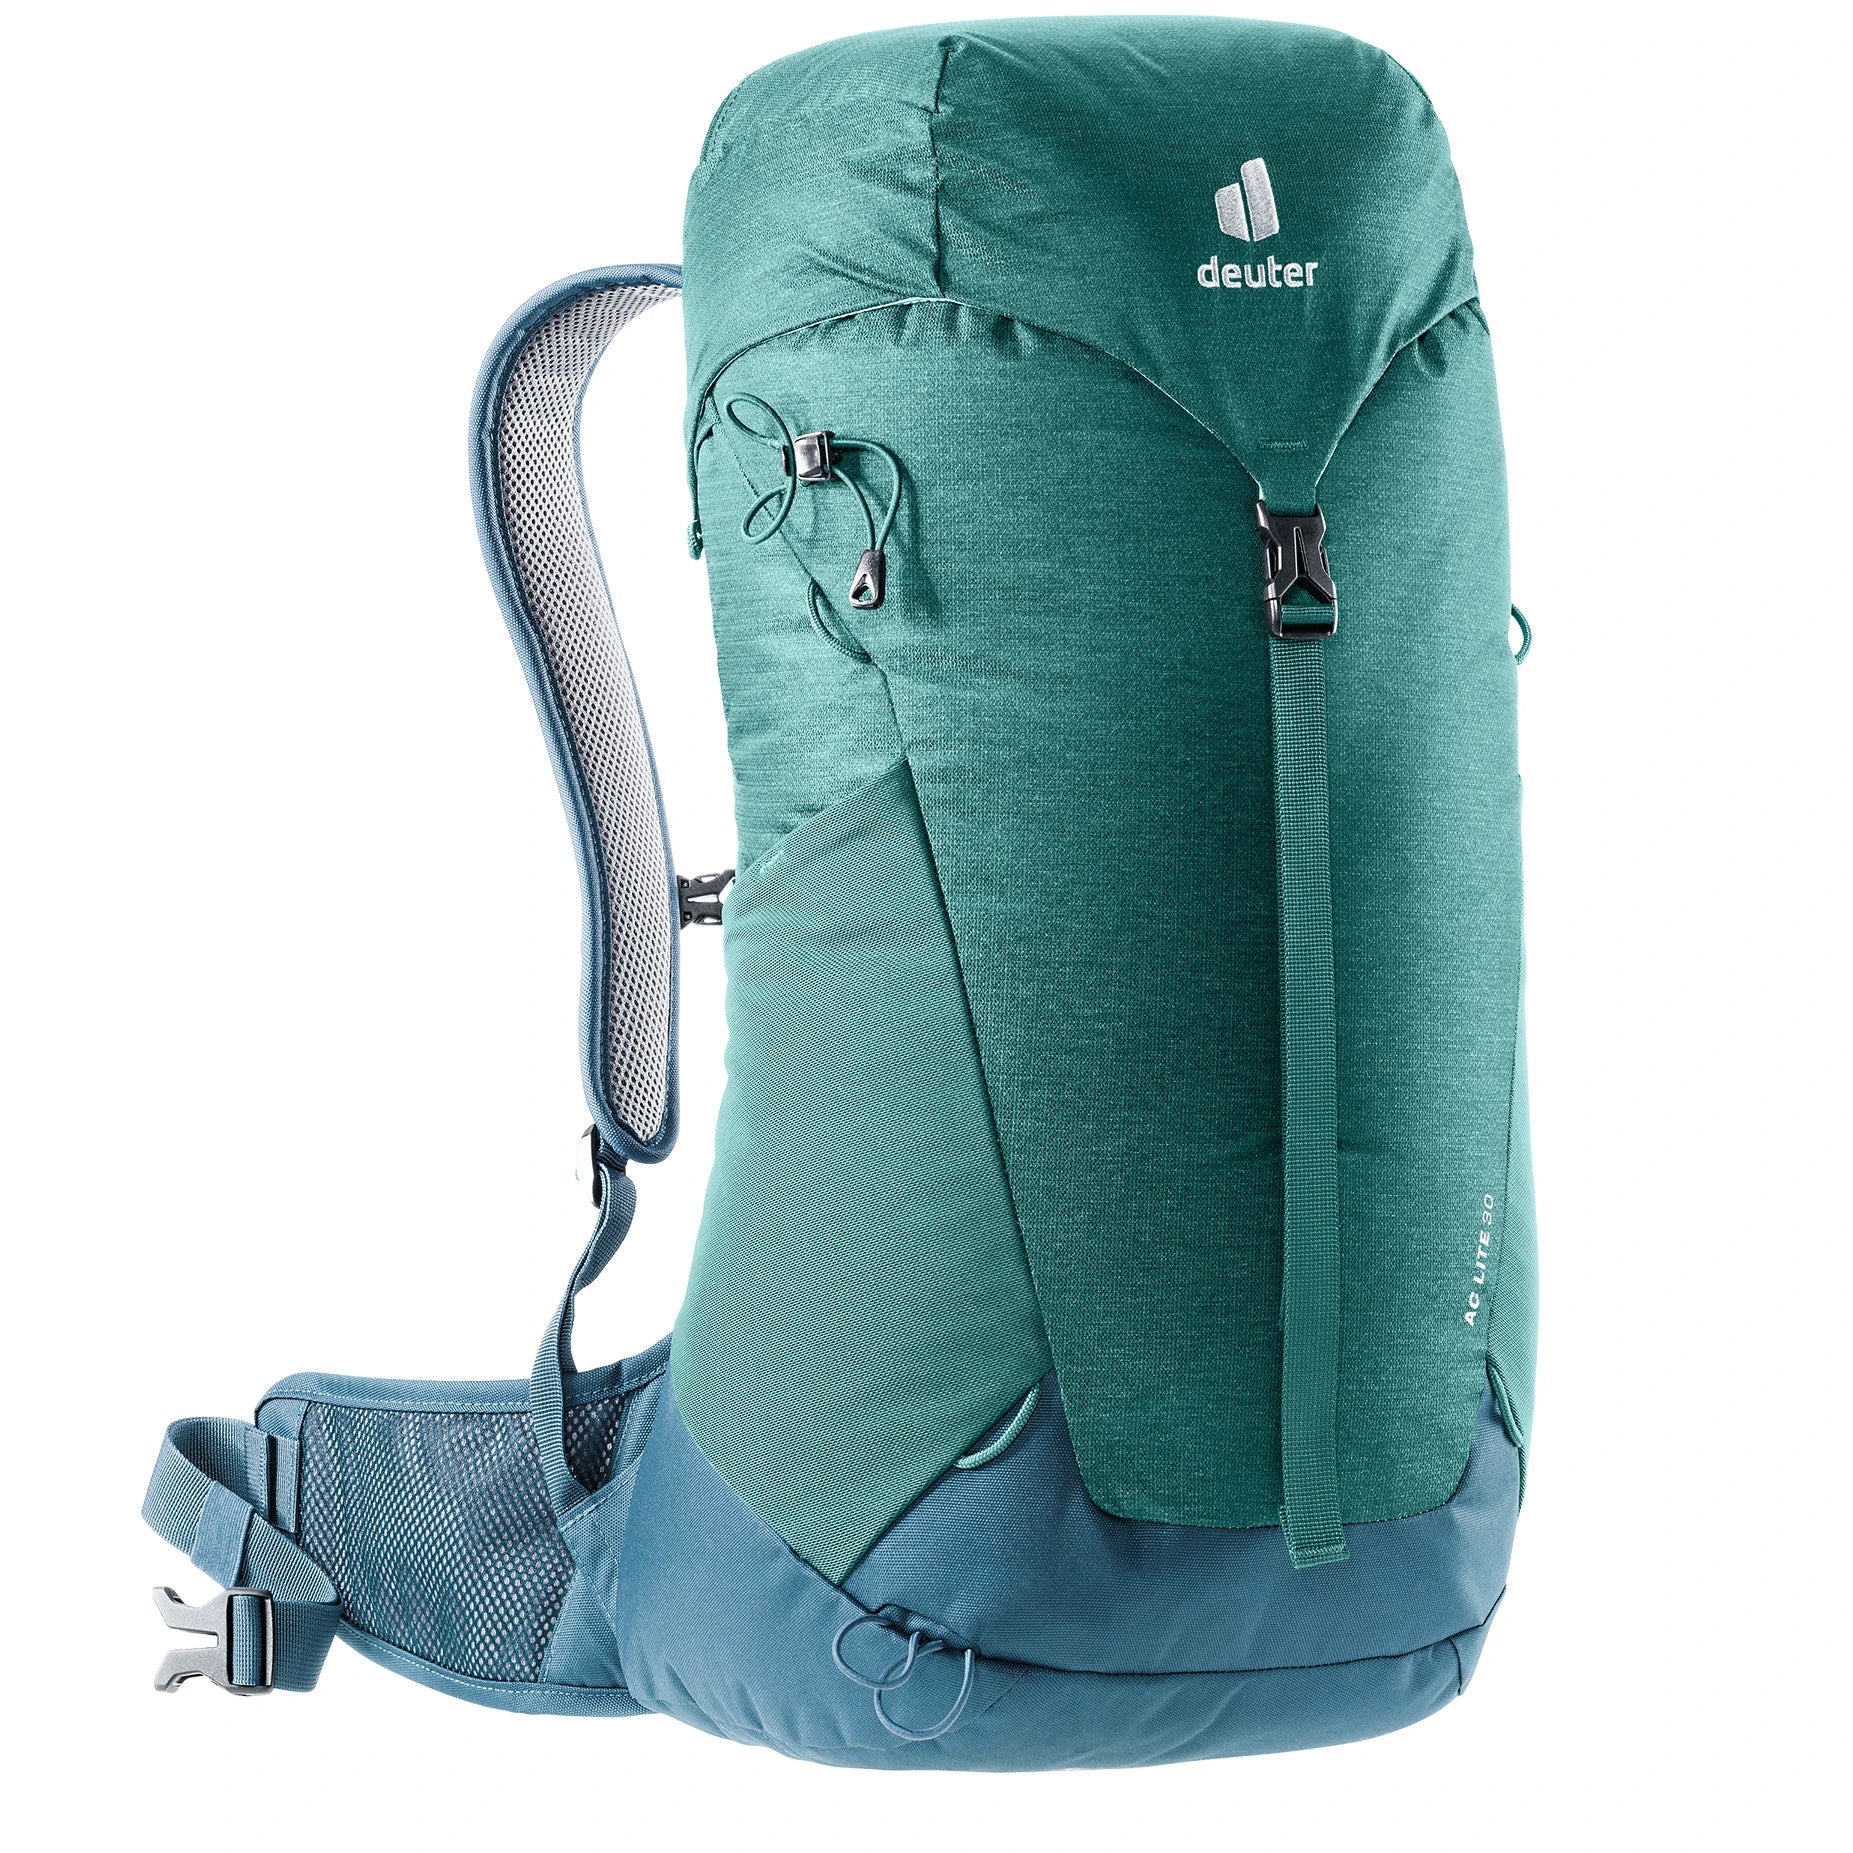 Deuter Travel AC Lite 30 sac à dos de randonnée 58 cm - vert alpin-arctique